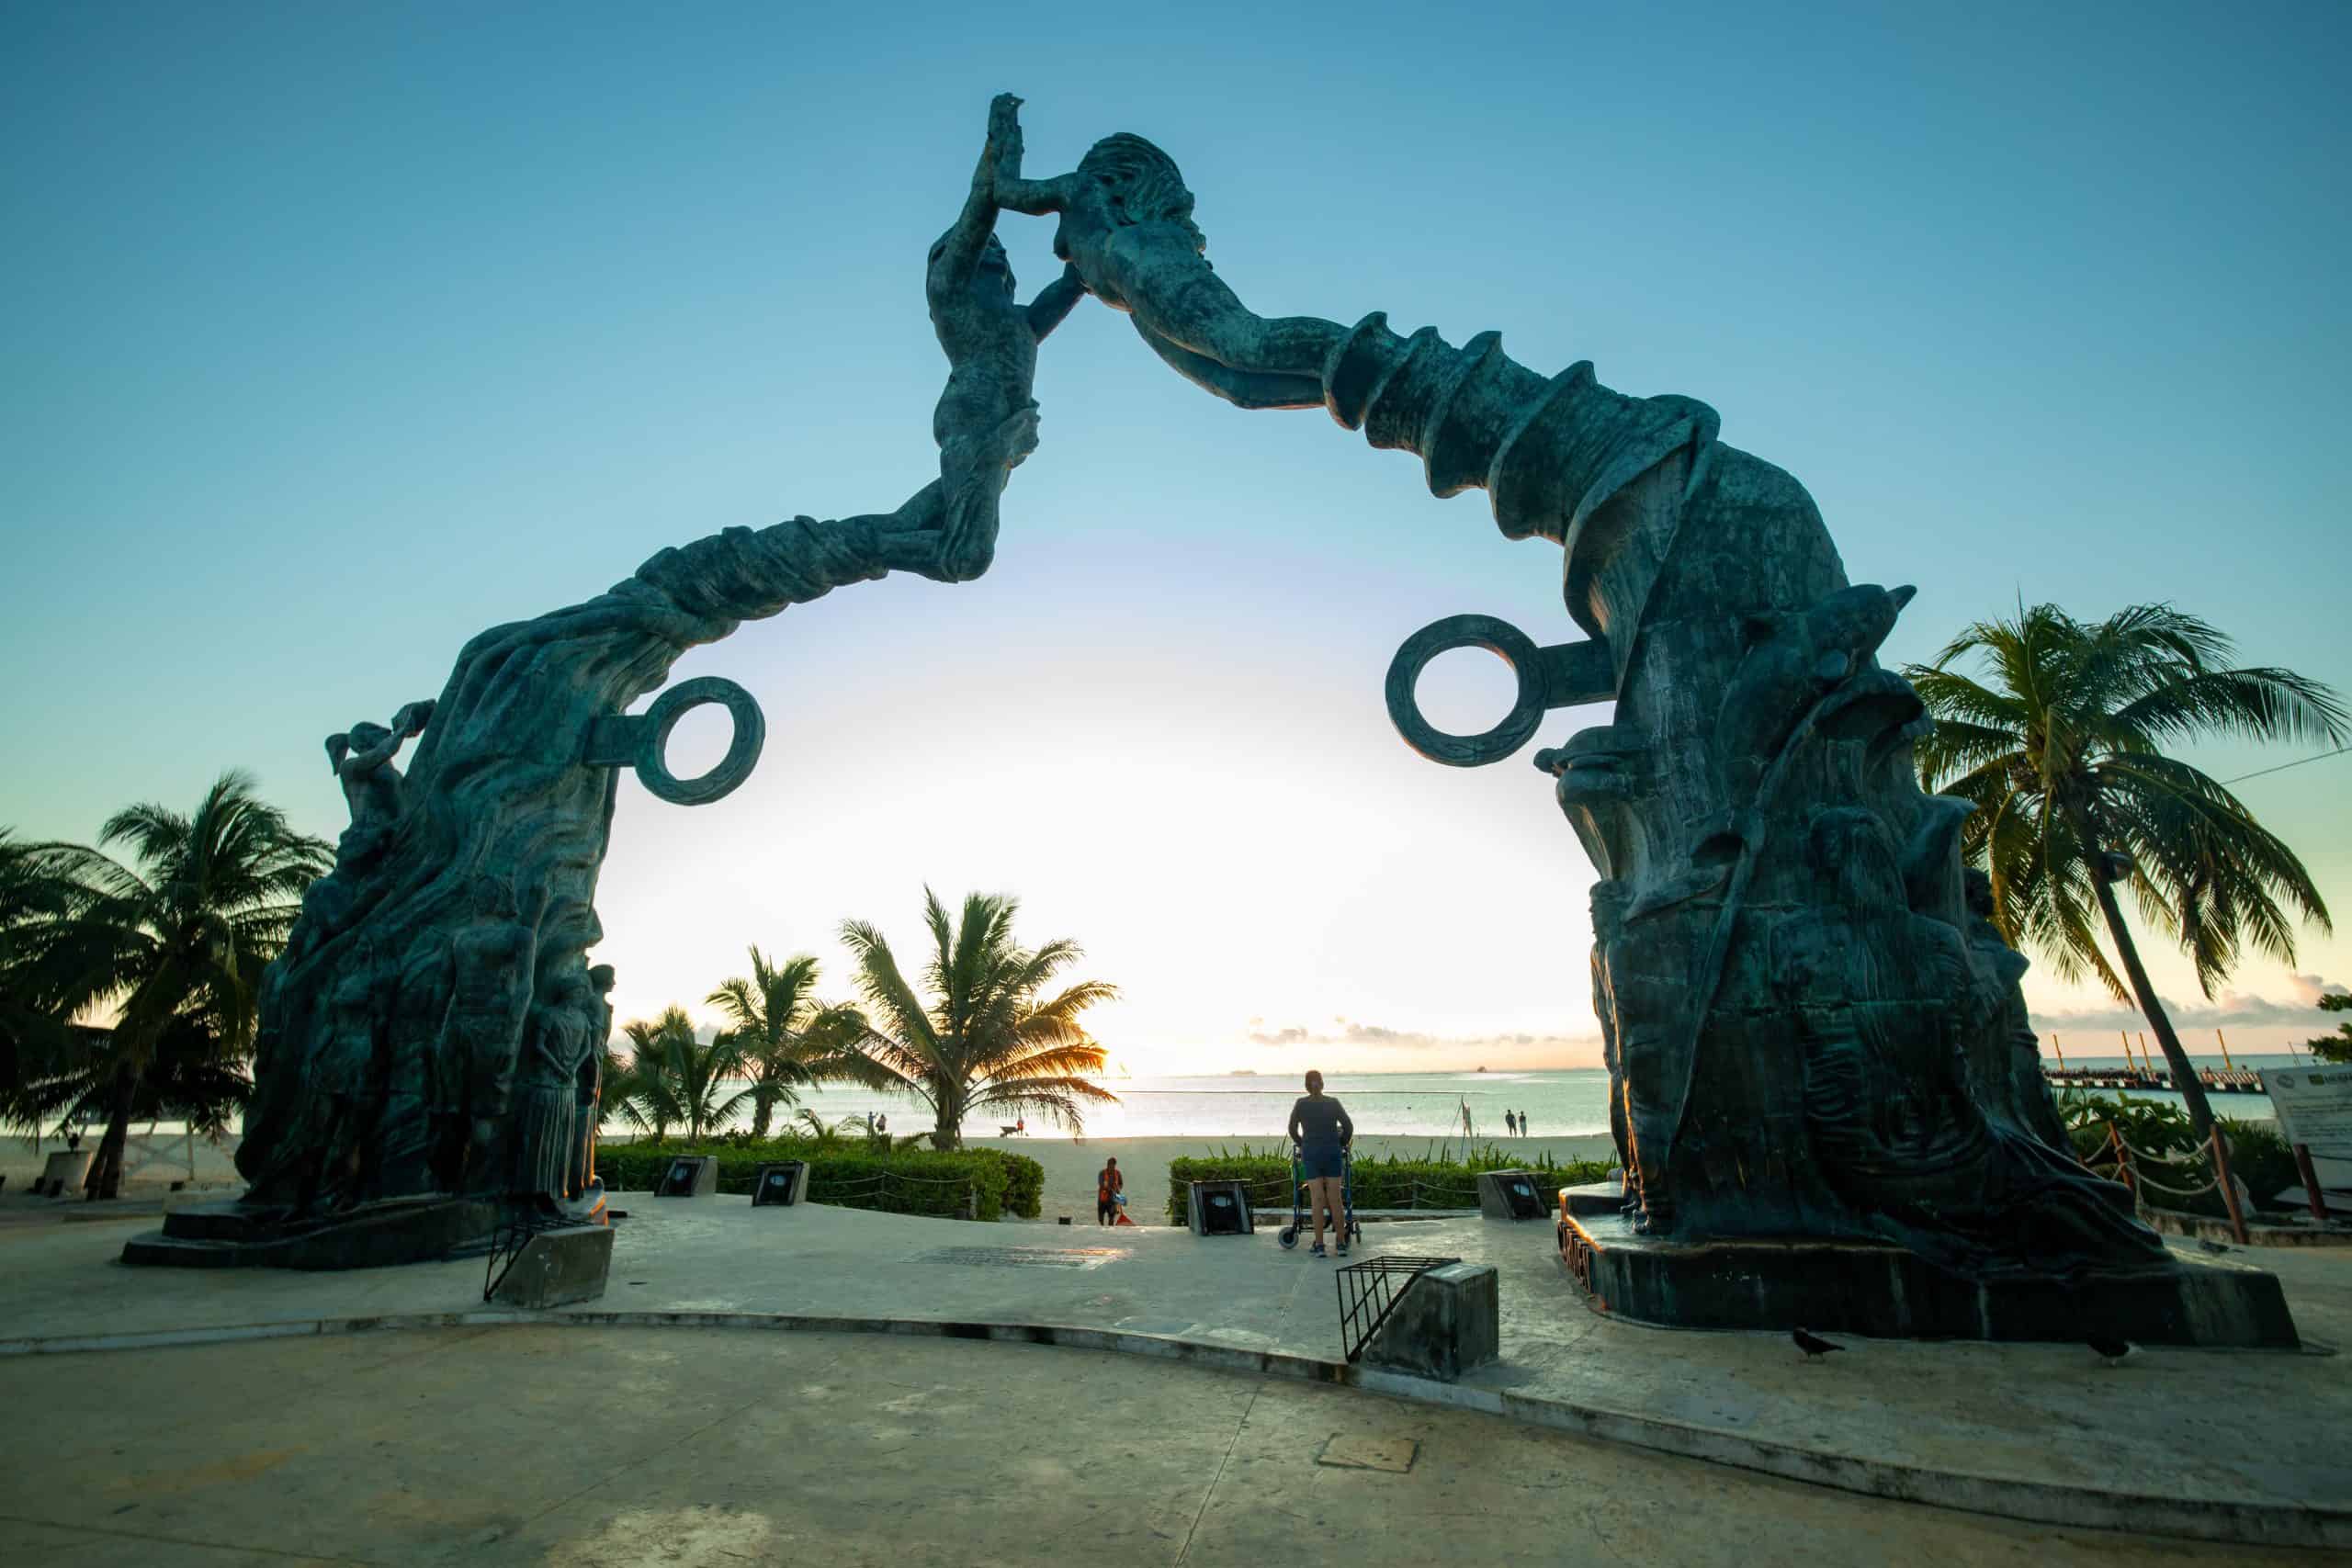 Parque Los Fundadores or the Founders Park, Playa del Carmen in Quintanaroo, Playa del Carmen vs Cozumel